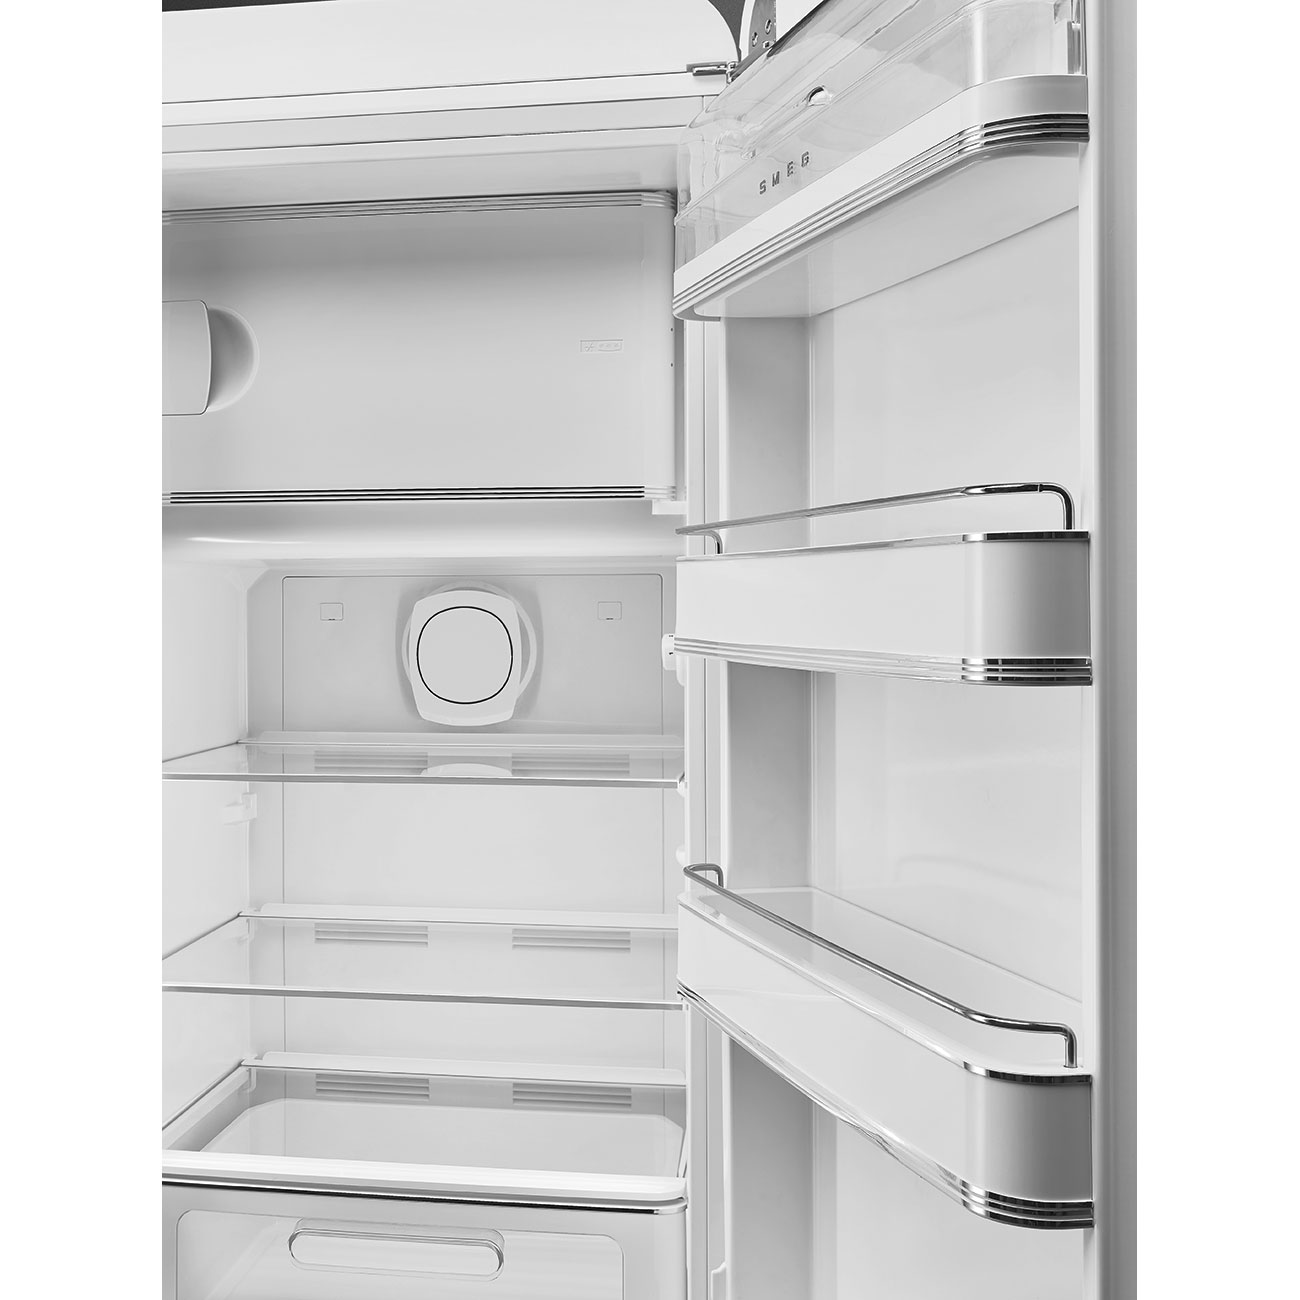 White refrigerator - Smeg_3